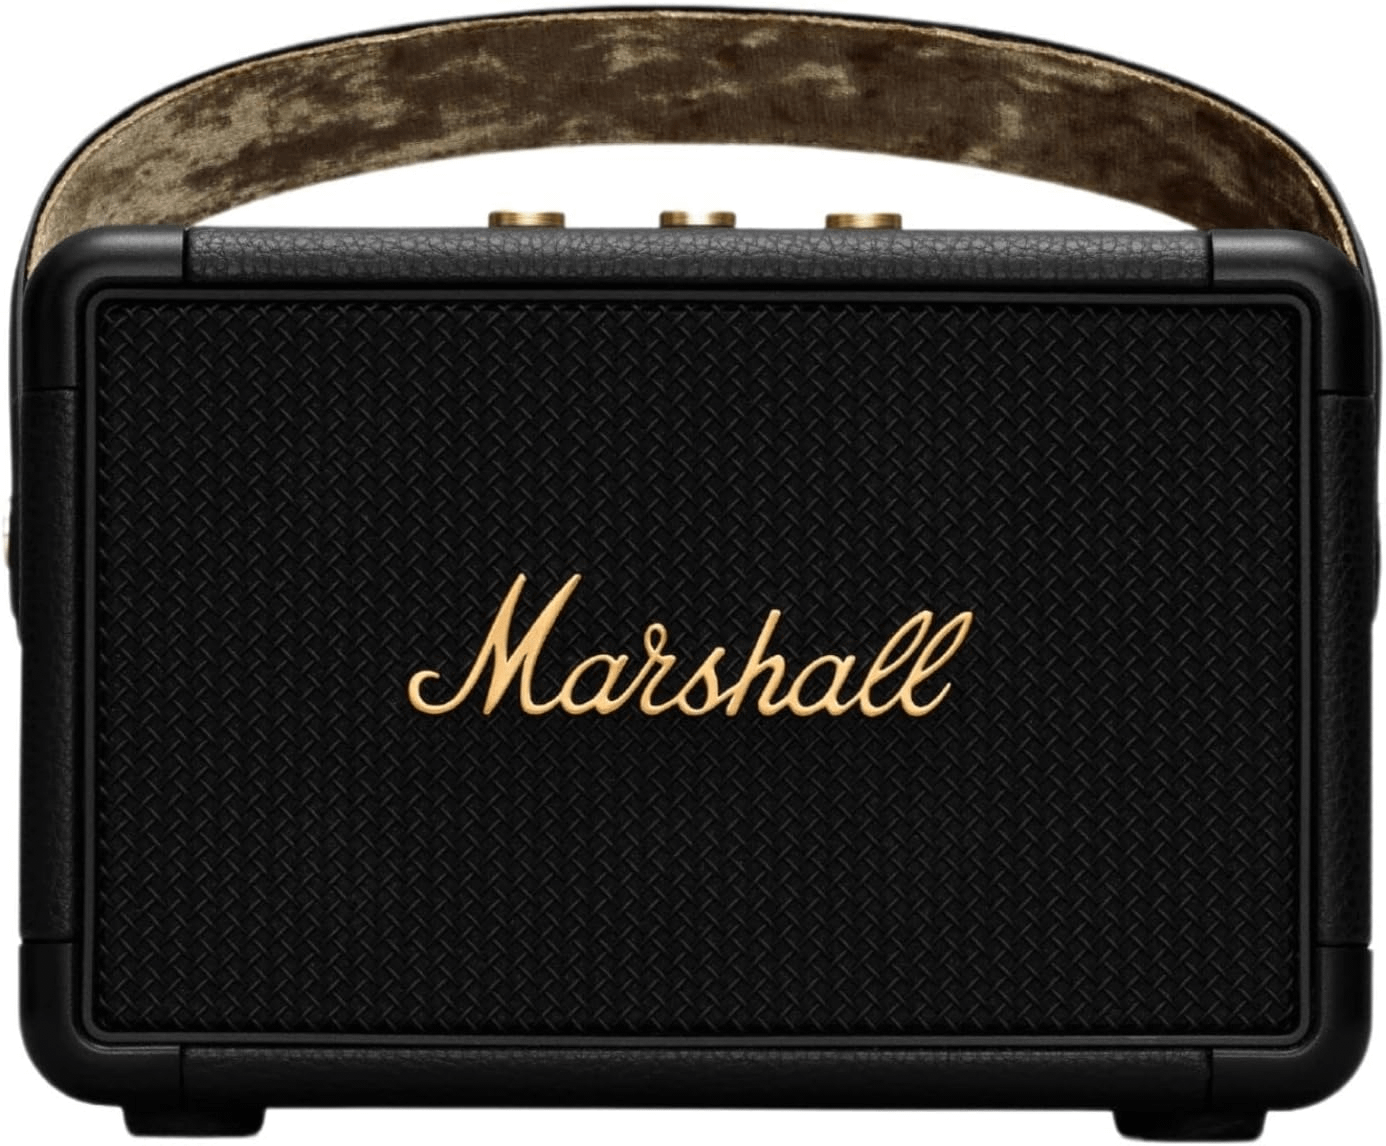 Portable Speakers on Sale - Marshall Kilburn II Bluetooth Portable Speaker